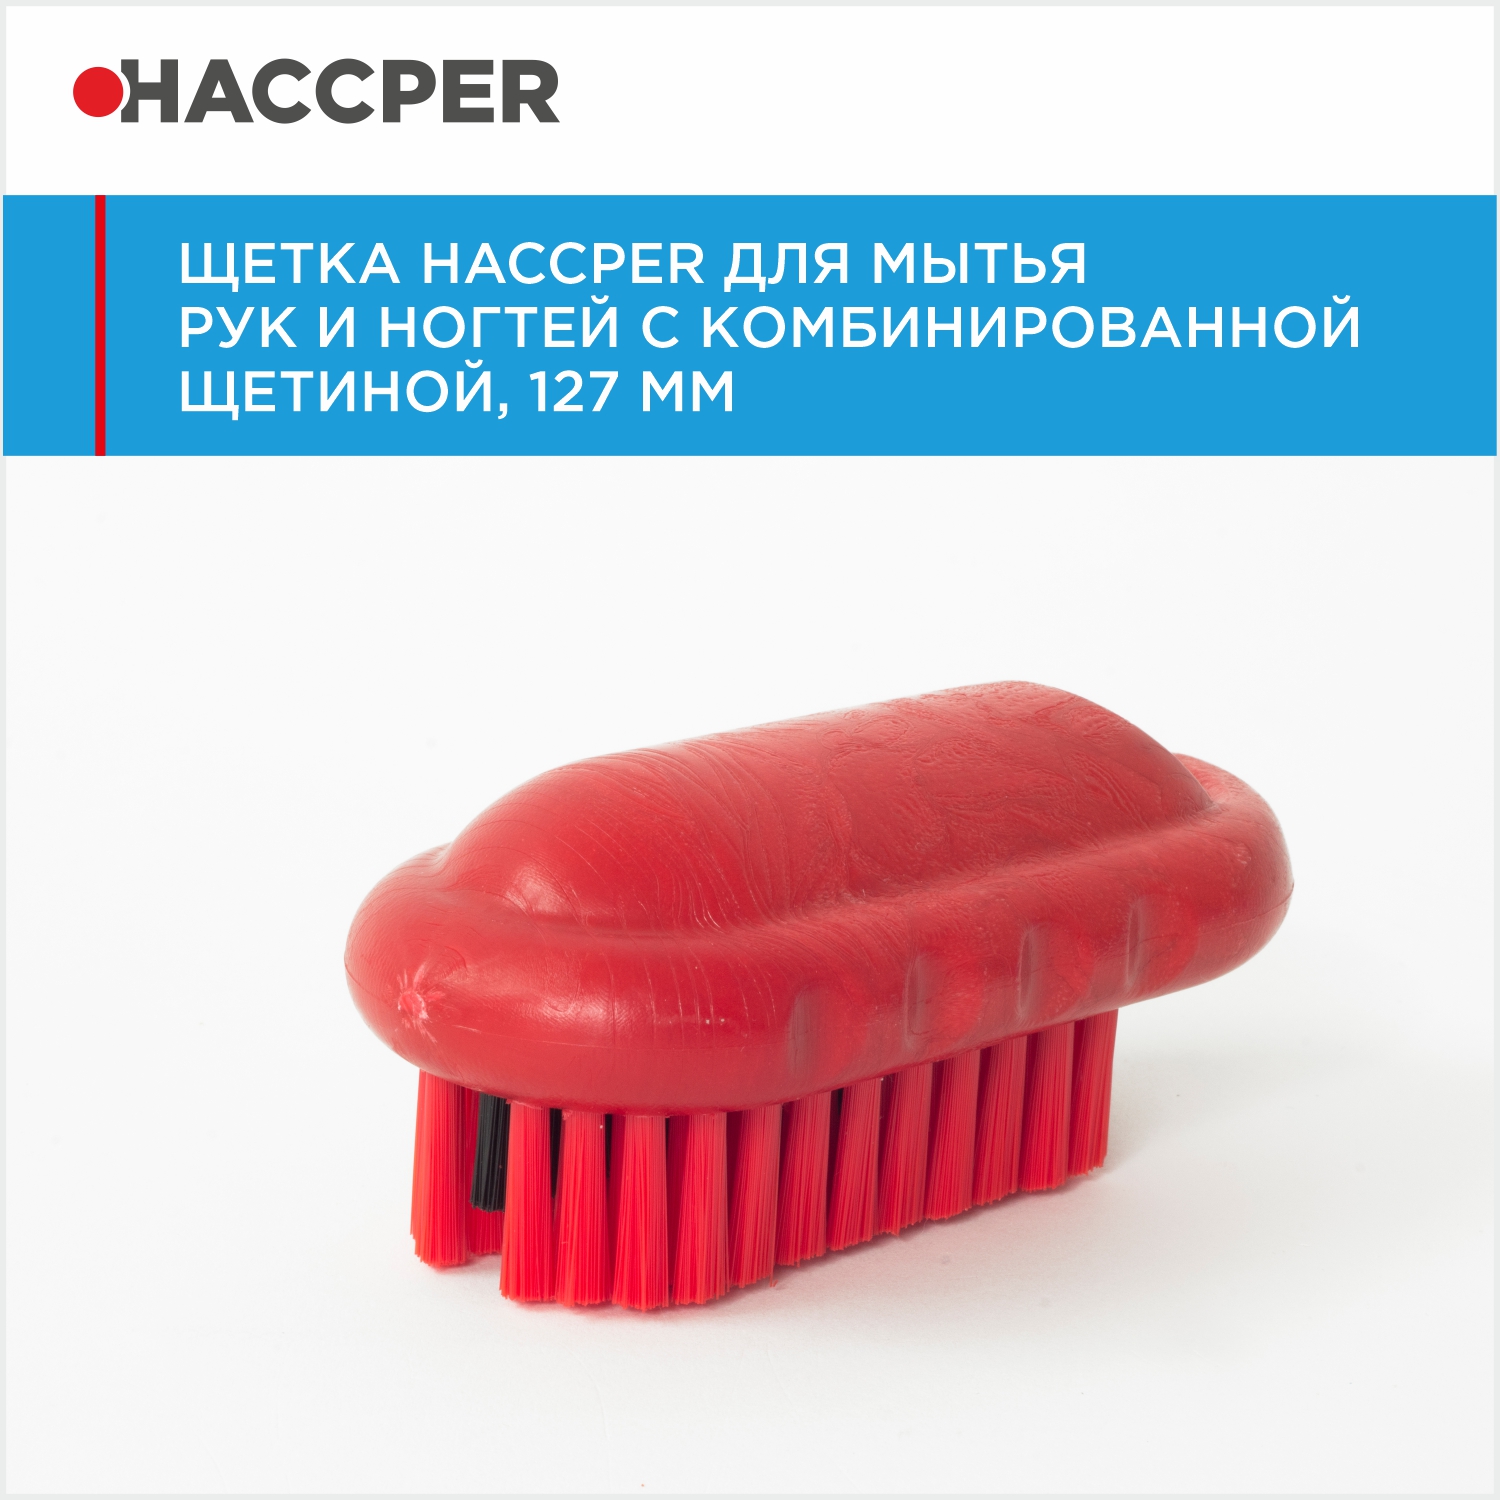 Щетка HACCPER для мытья рук и ногтей с комбинированной щетиной, 127 мм, красная